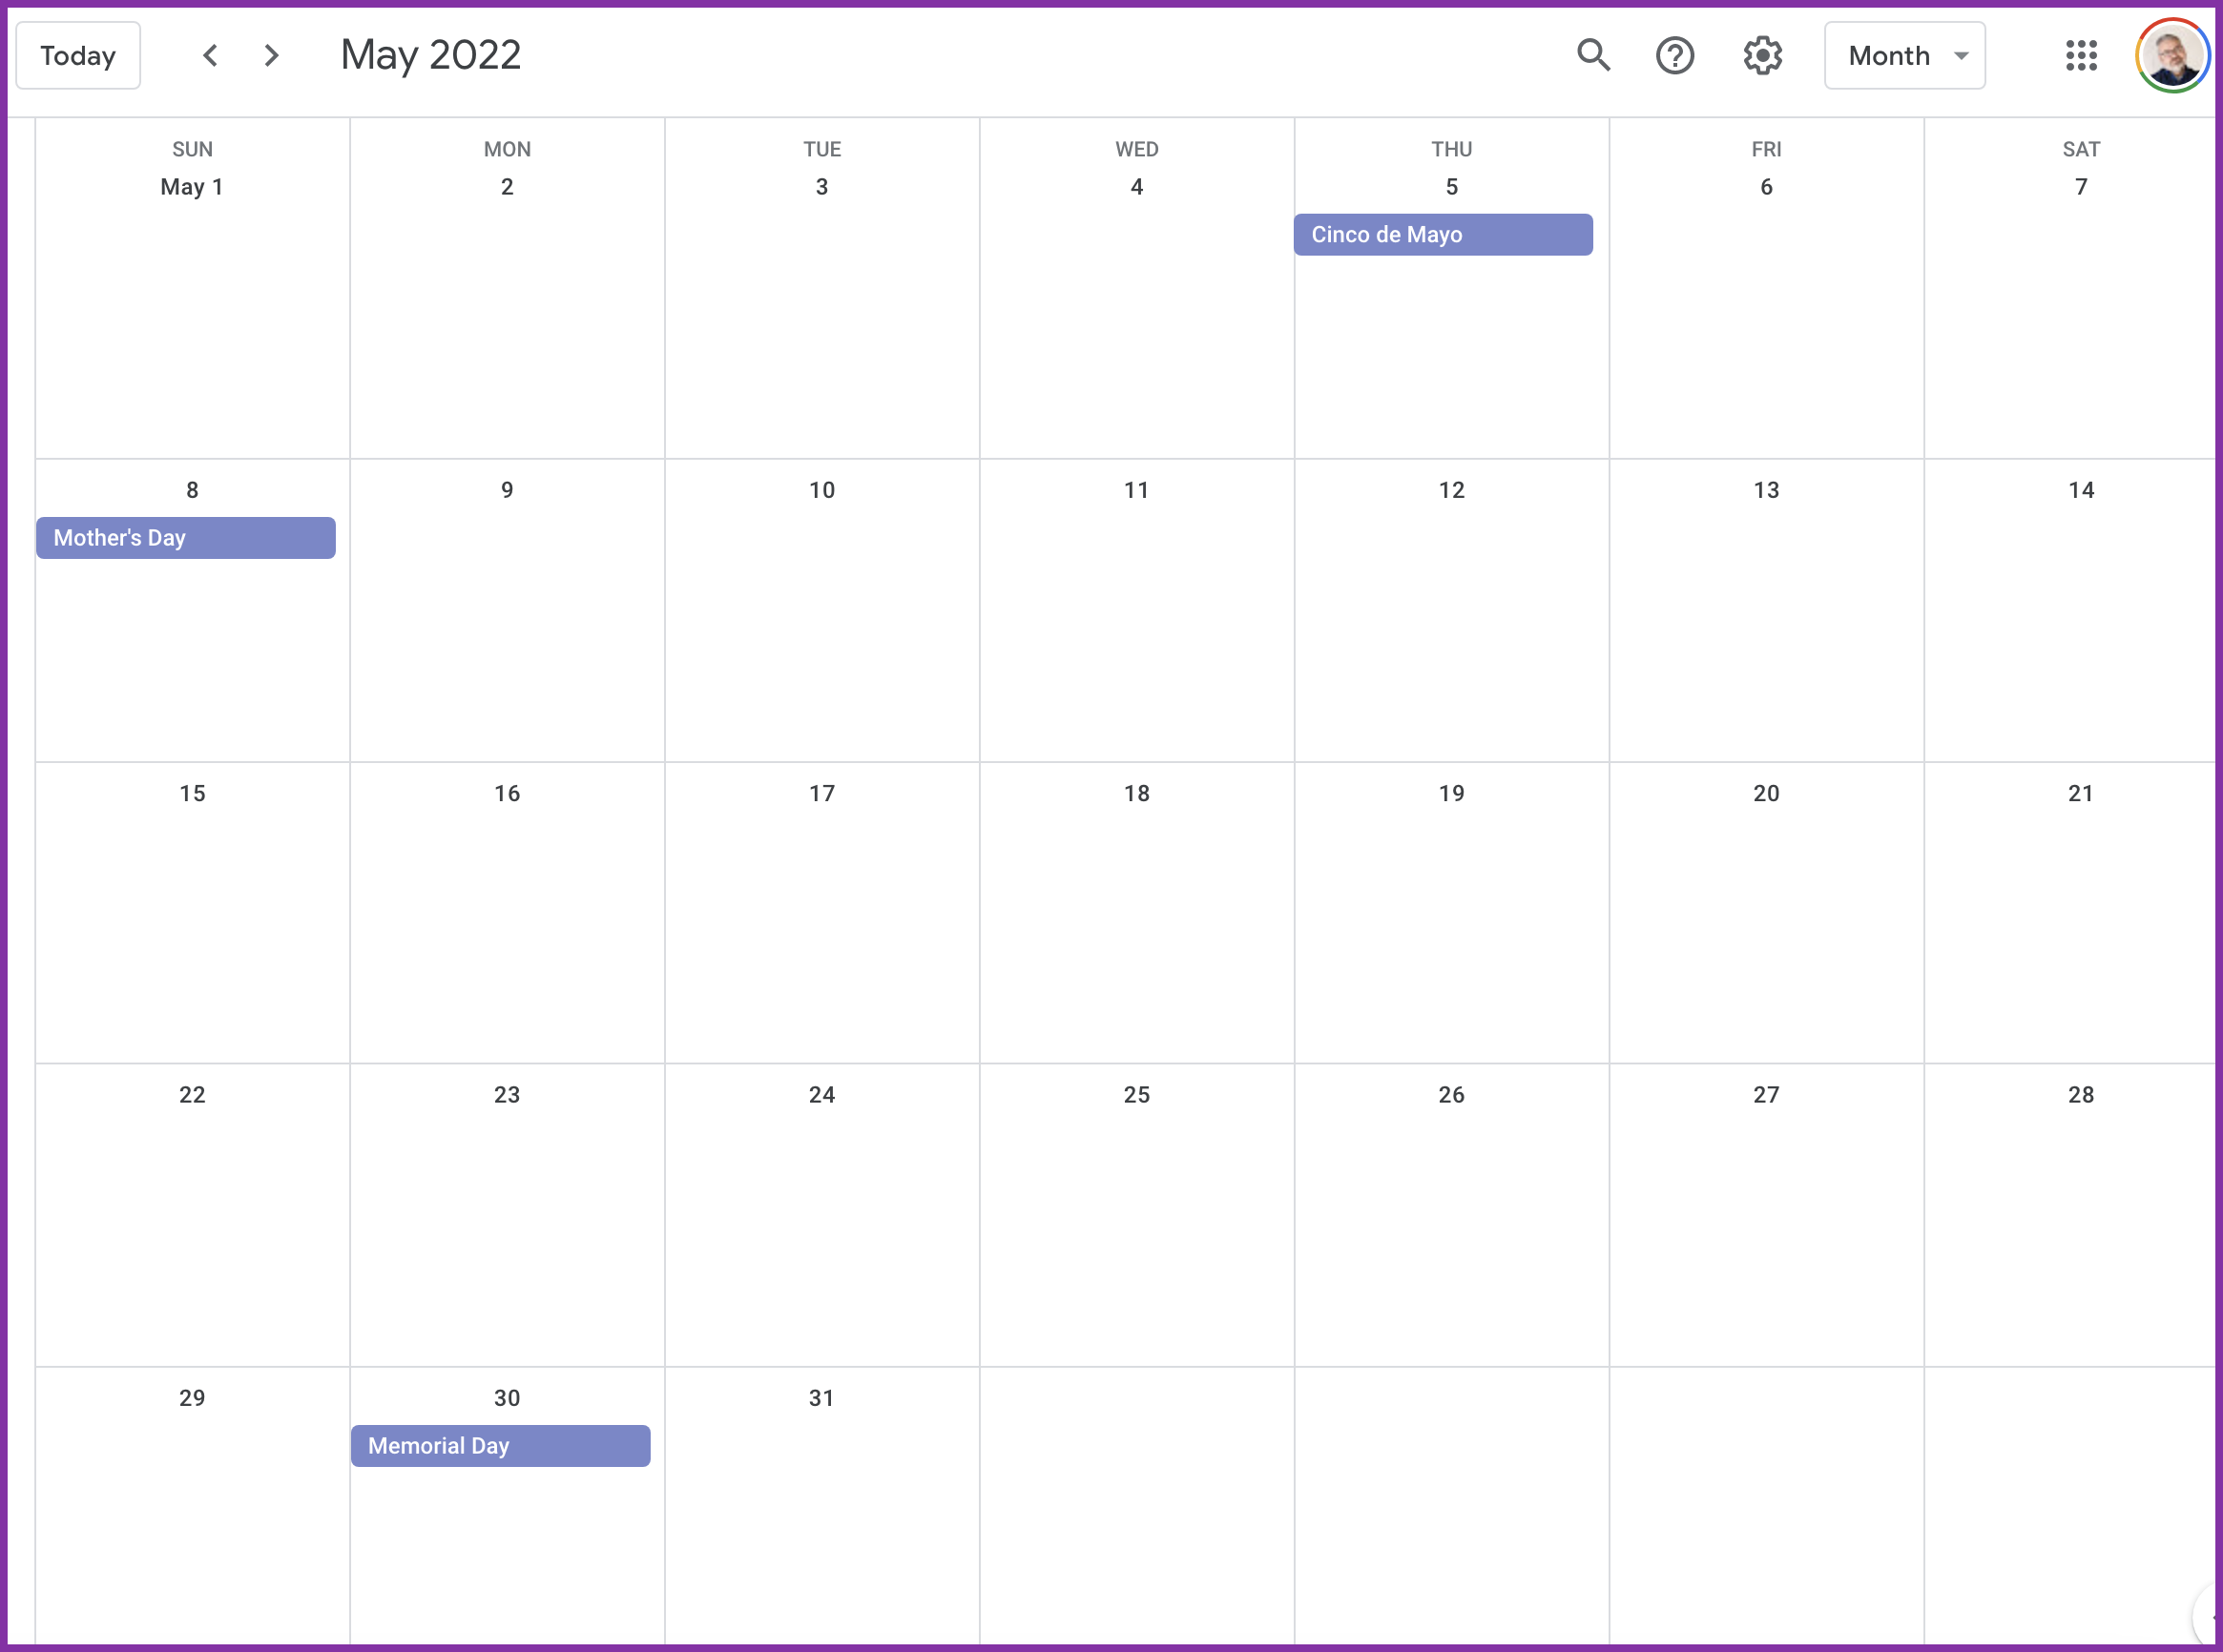 Adding holidays to your social media content calendar